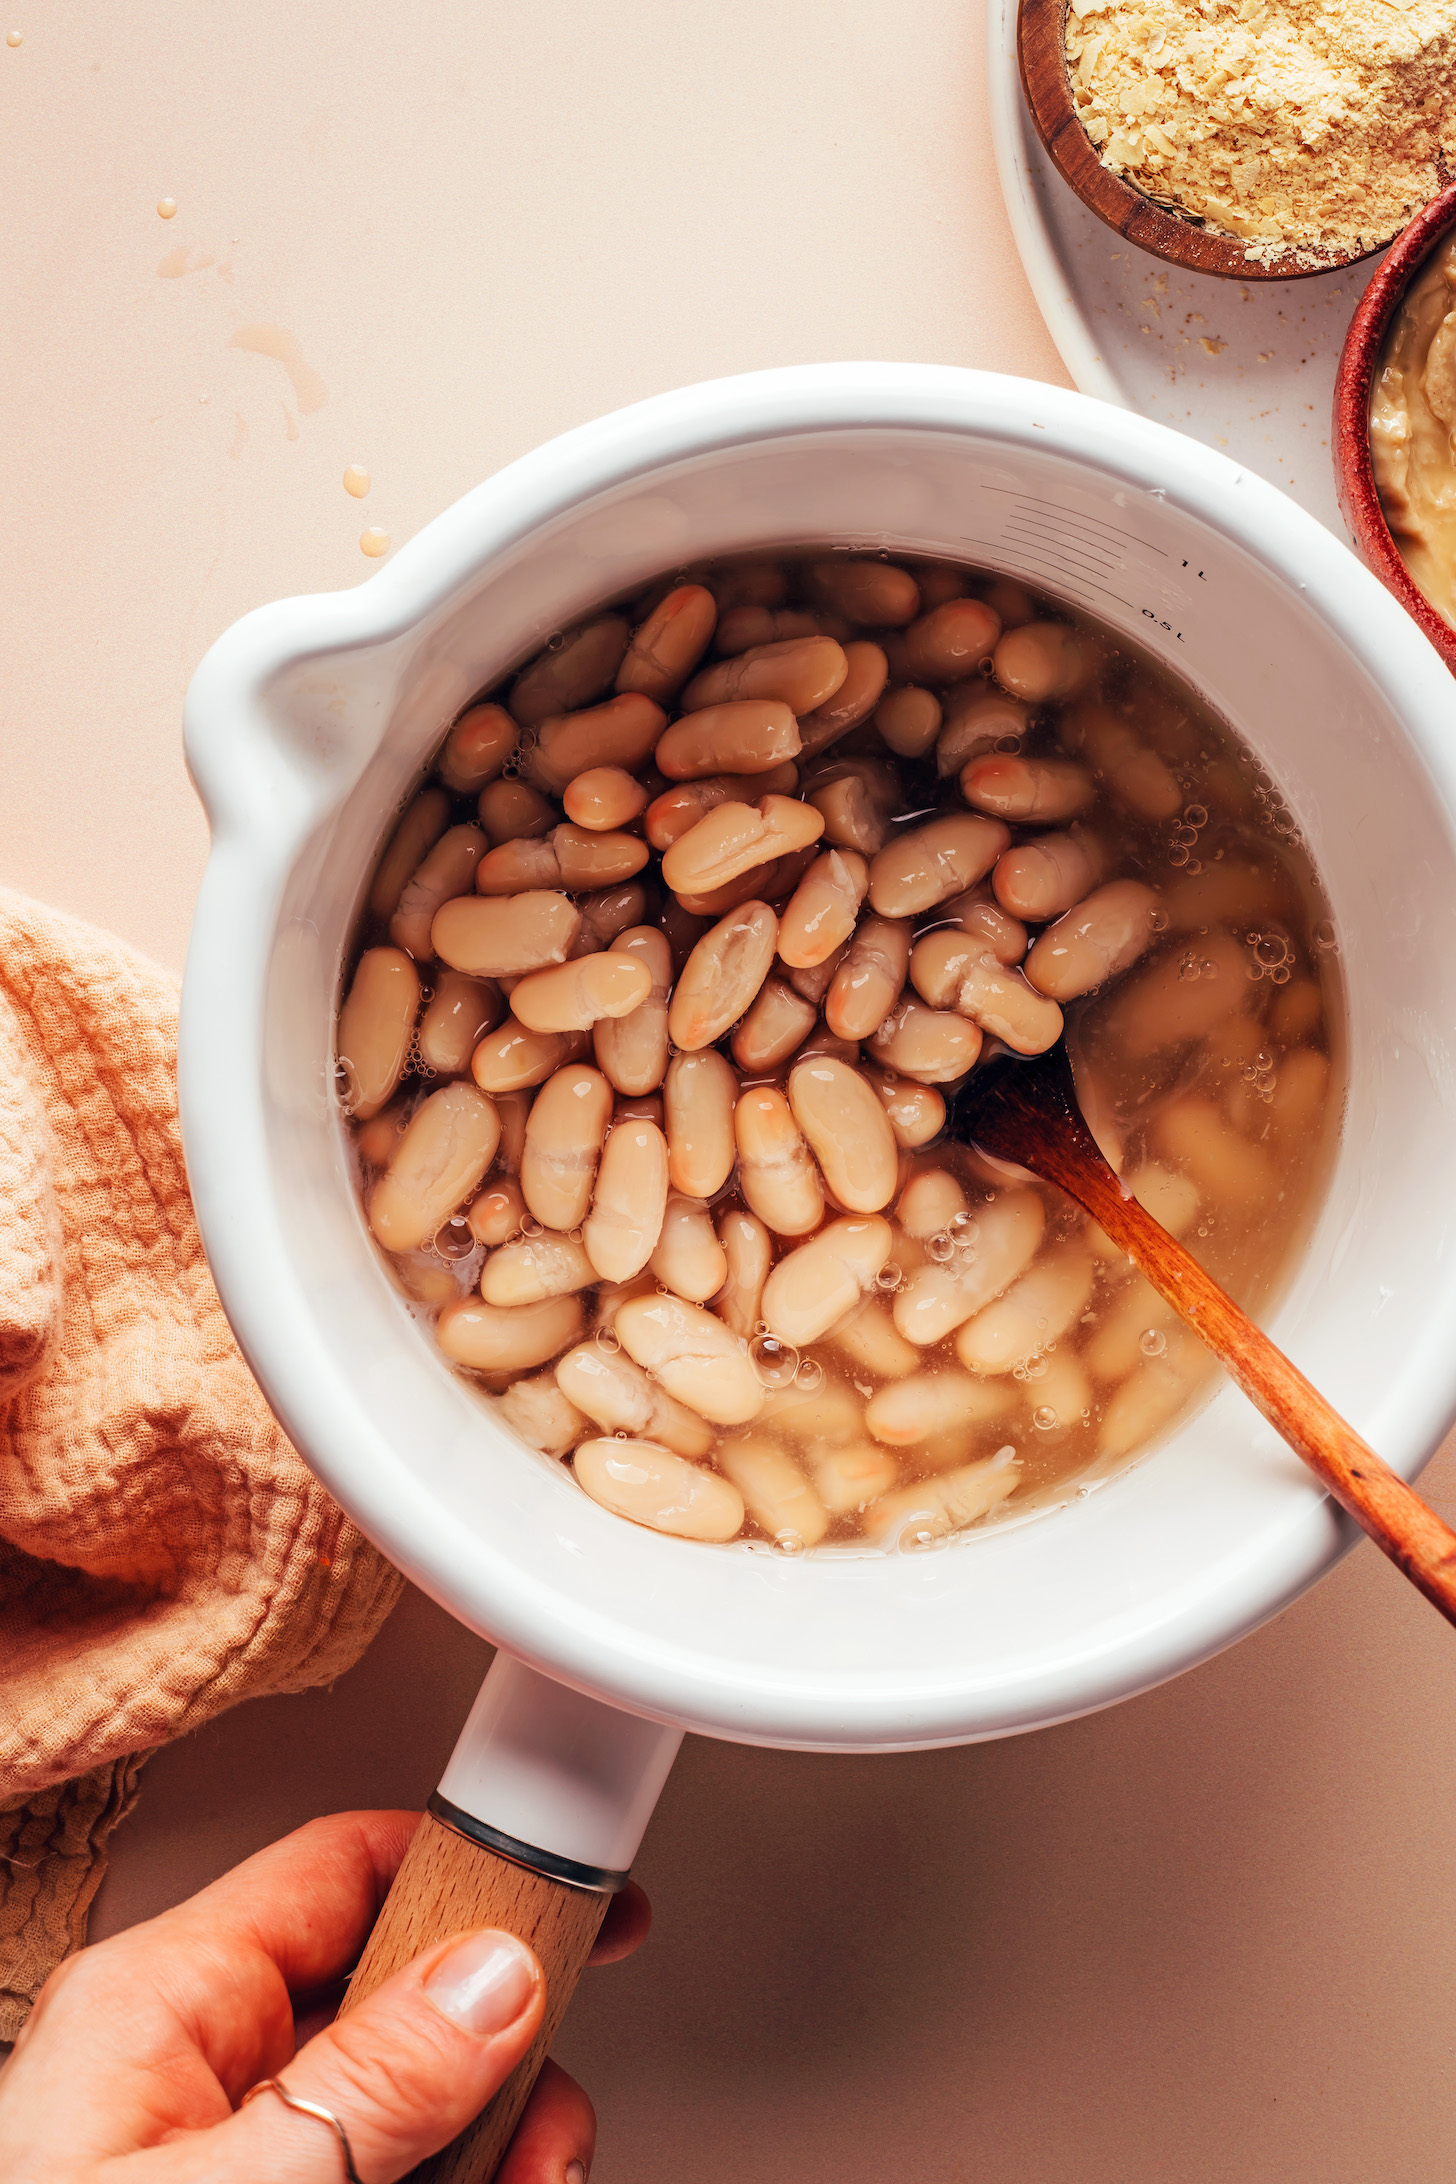 Heat the white beans in a saucepan